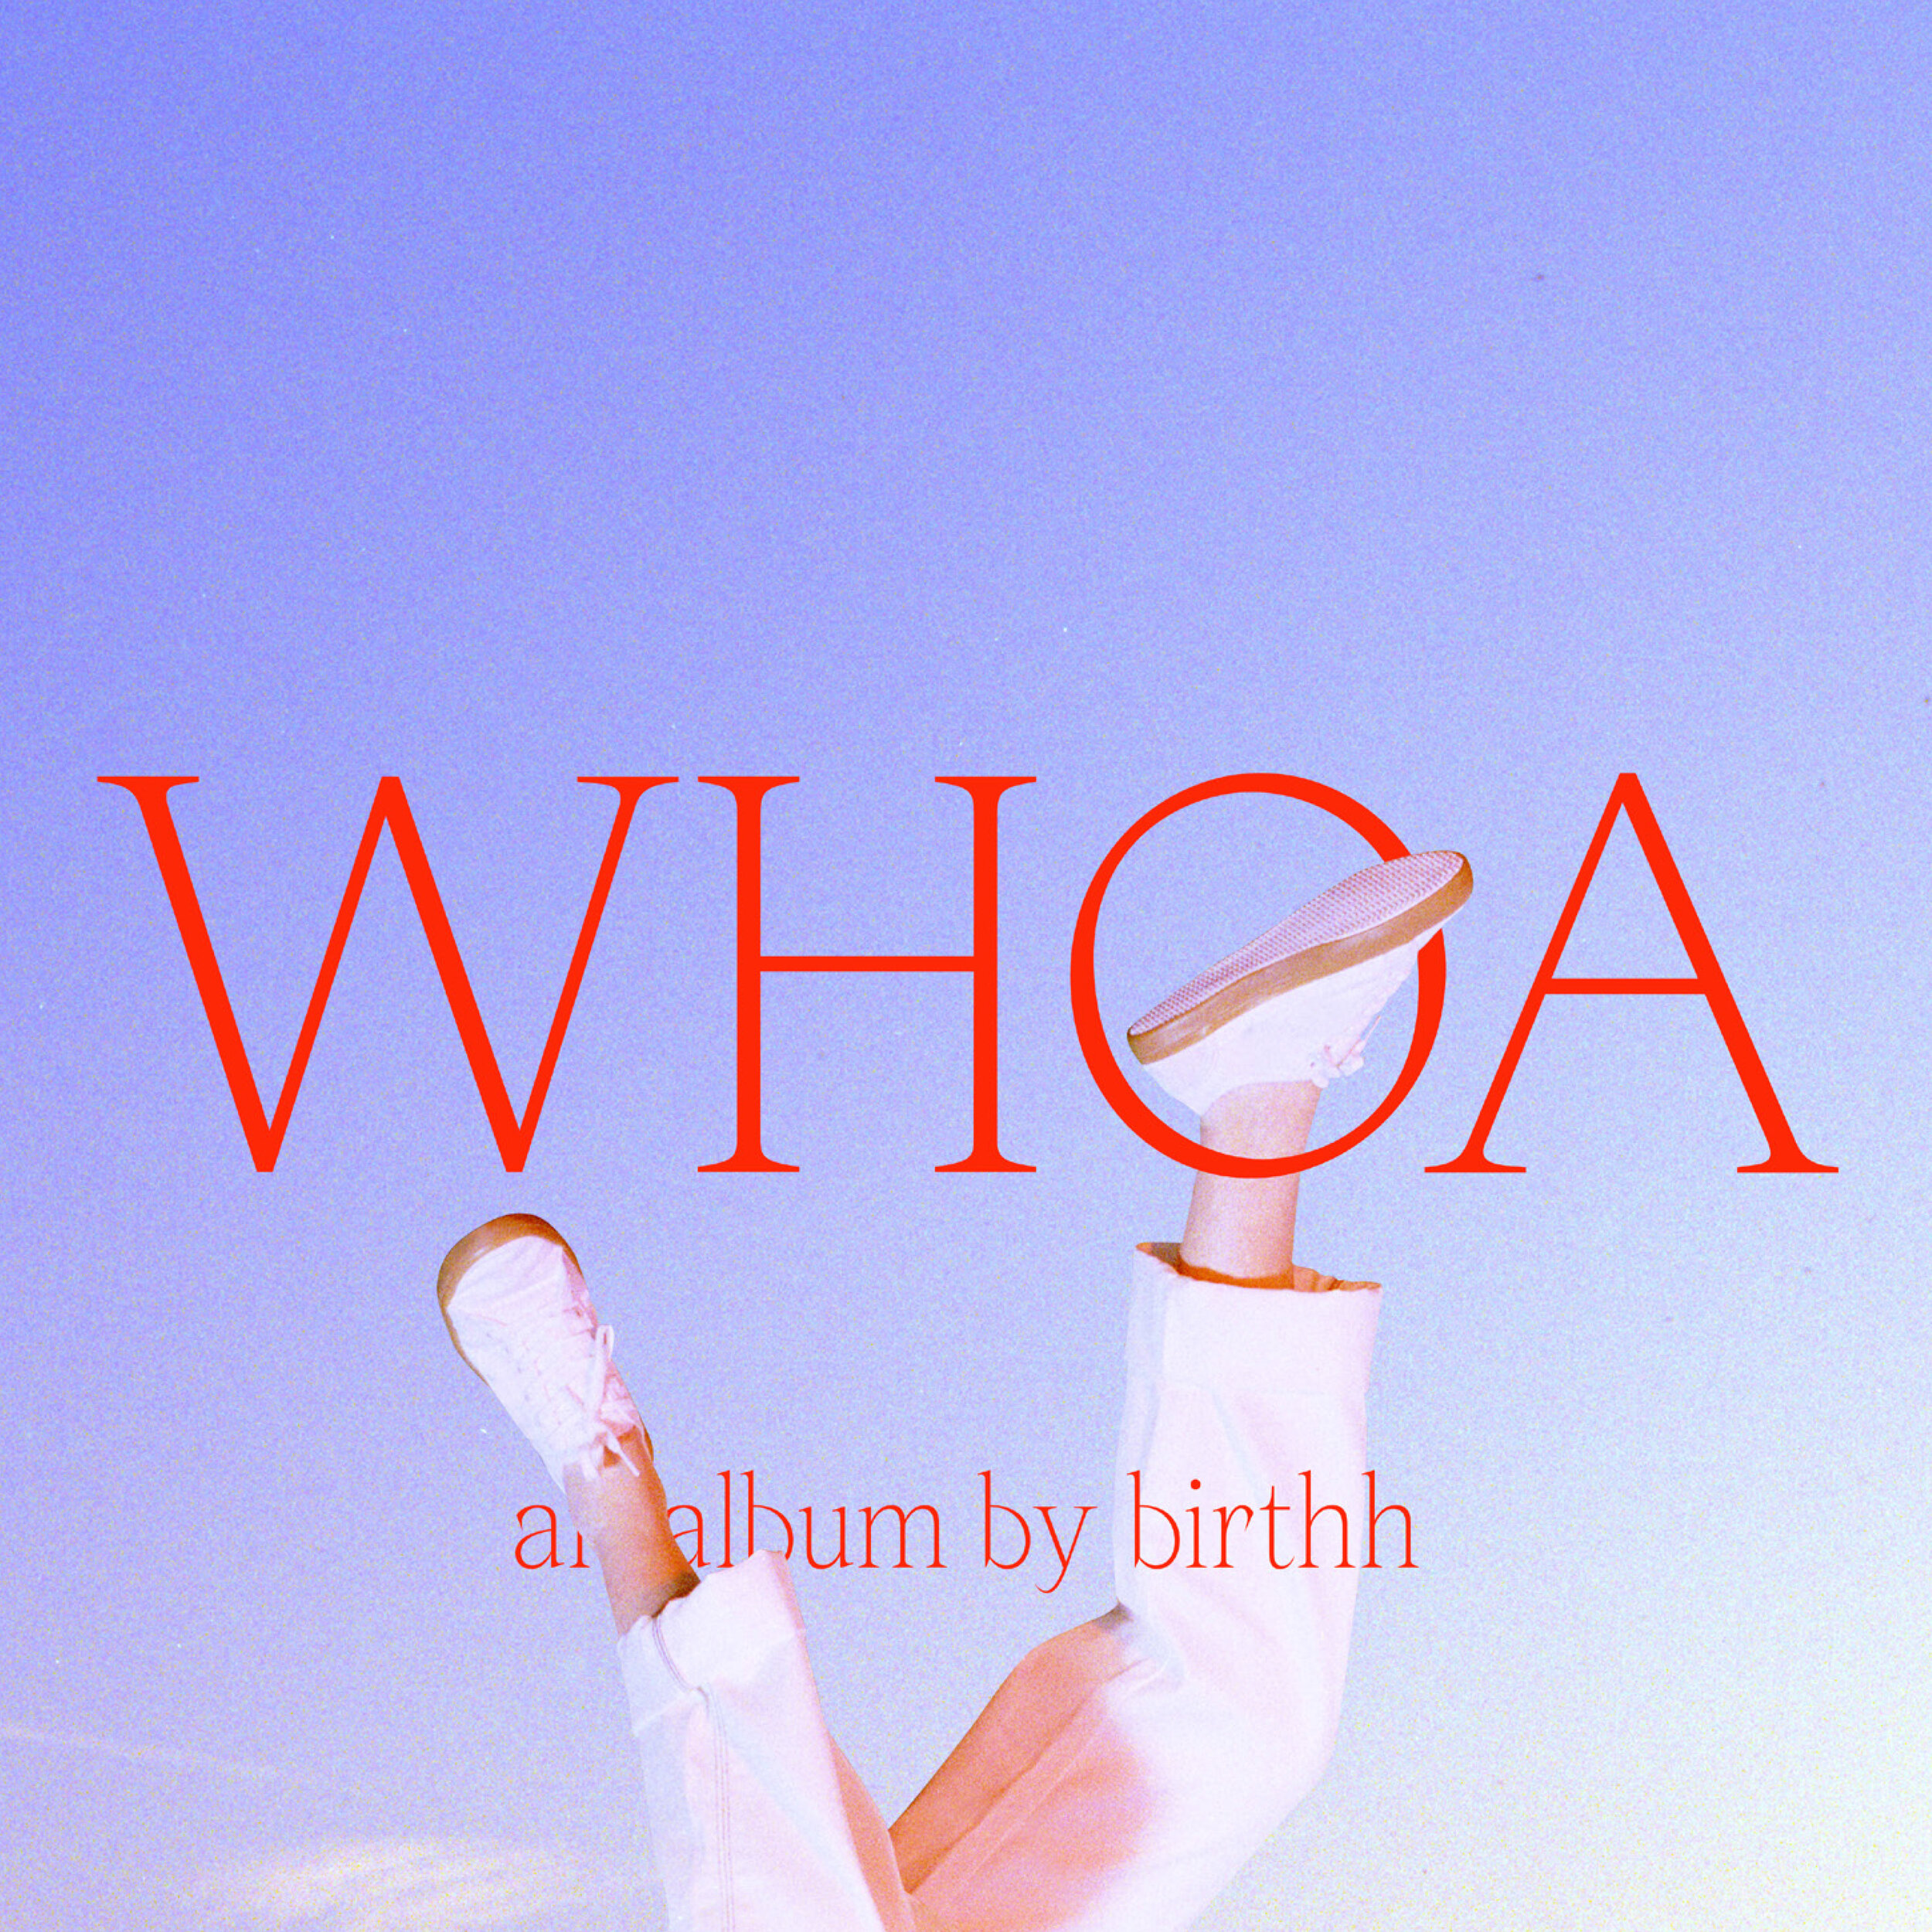 Birthh-WHOA-cover.jpg